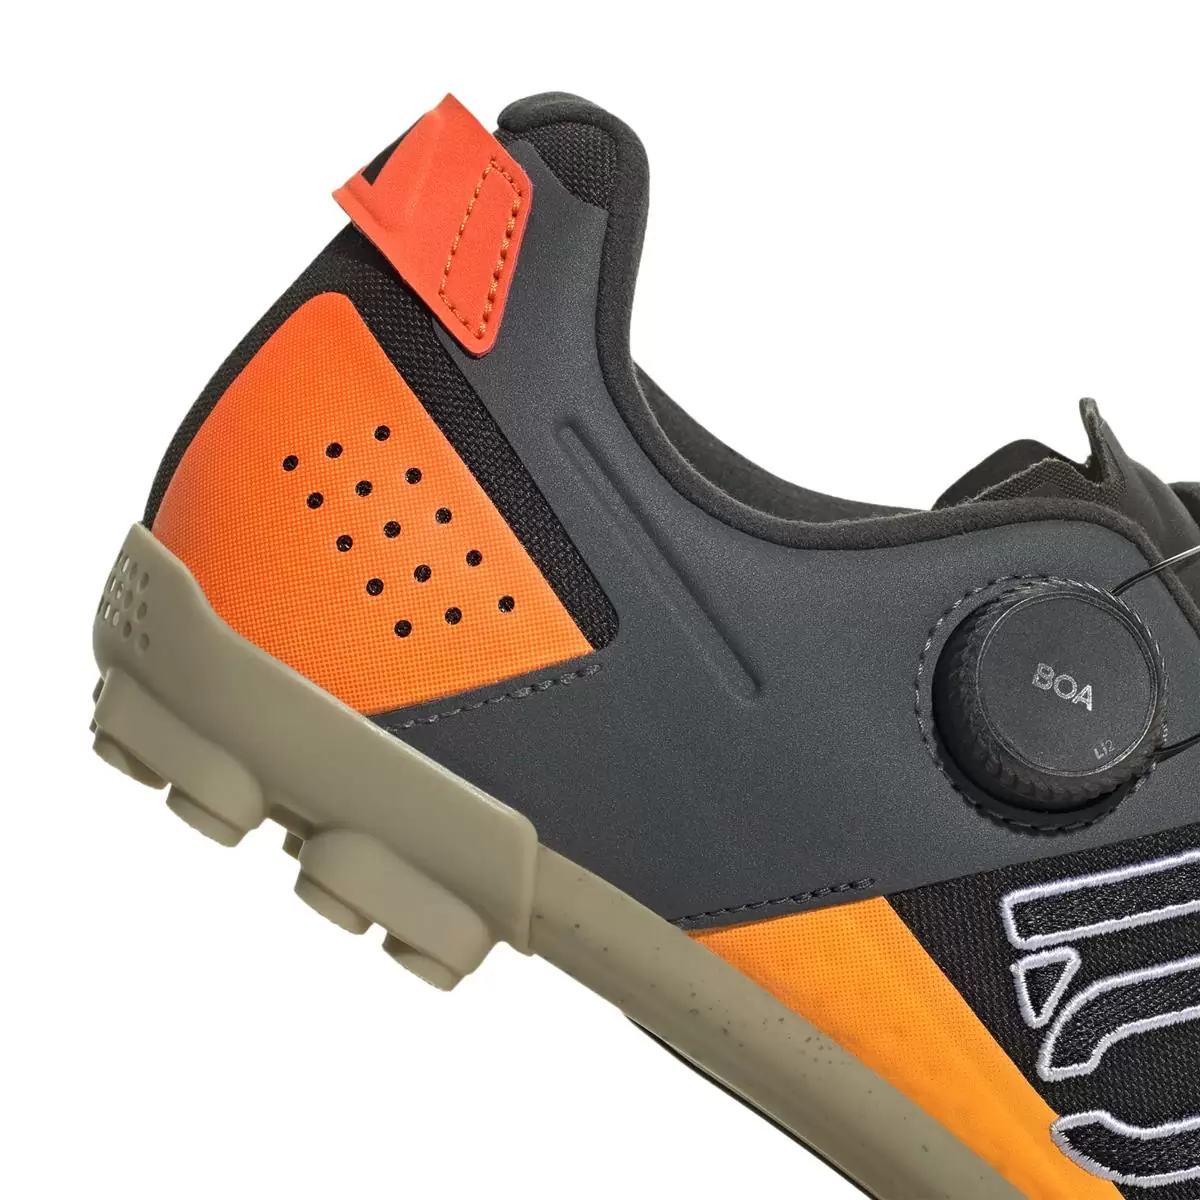 Clip 5.10 Kestrel Boa MTB Shoes Black/Orange Size 41 #7